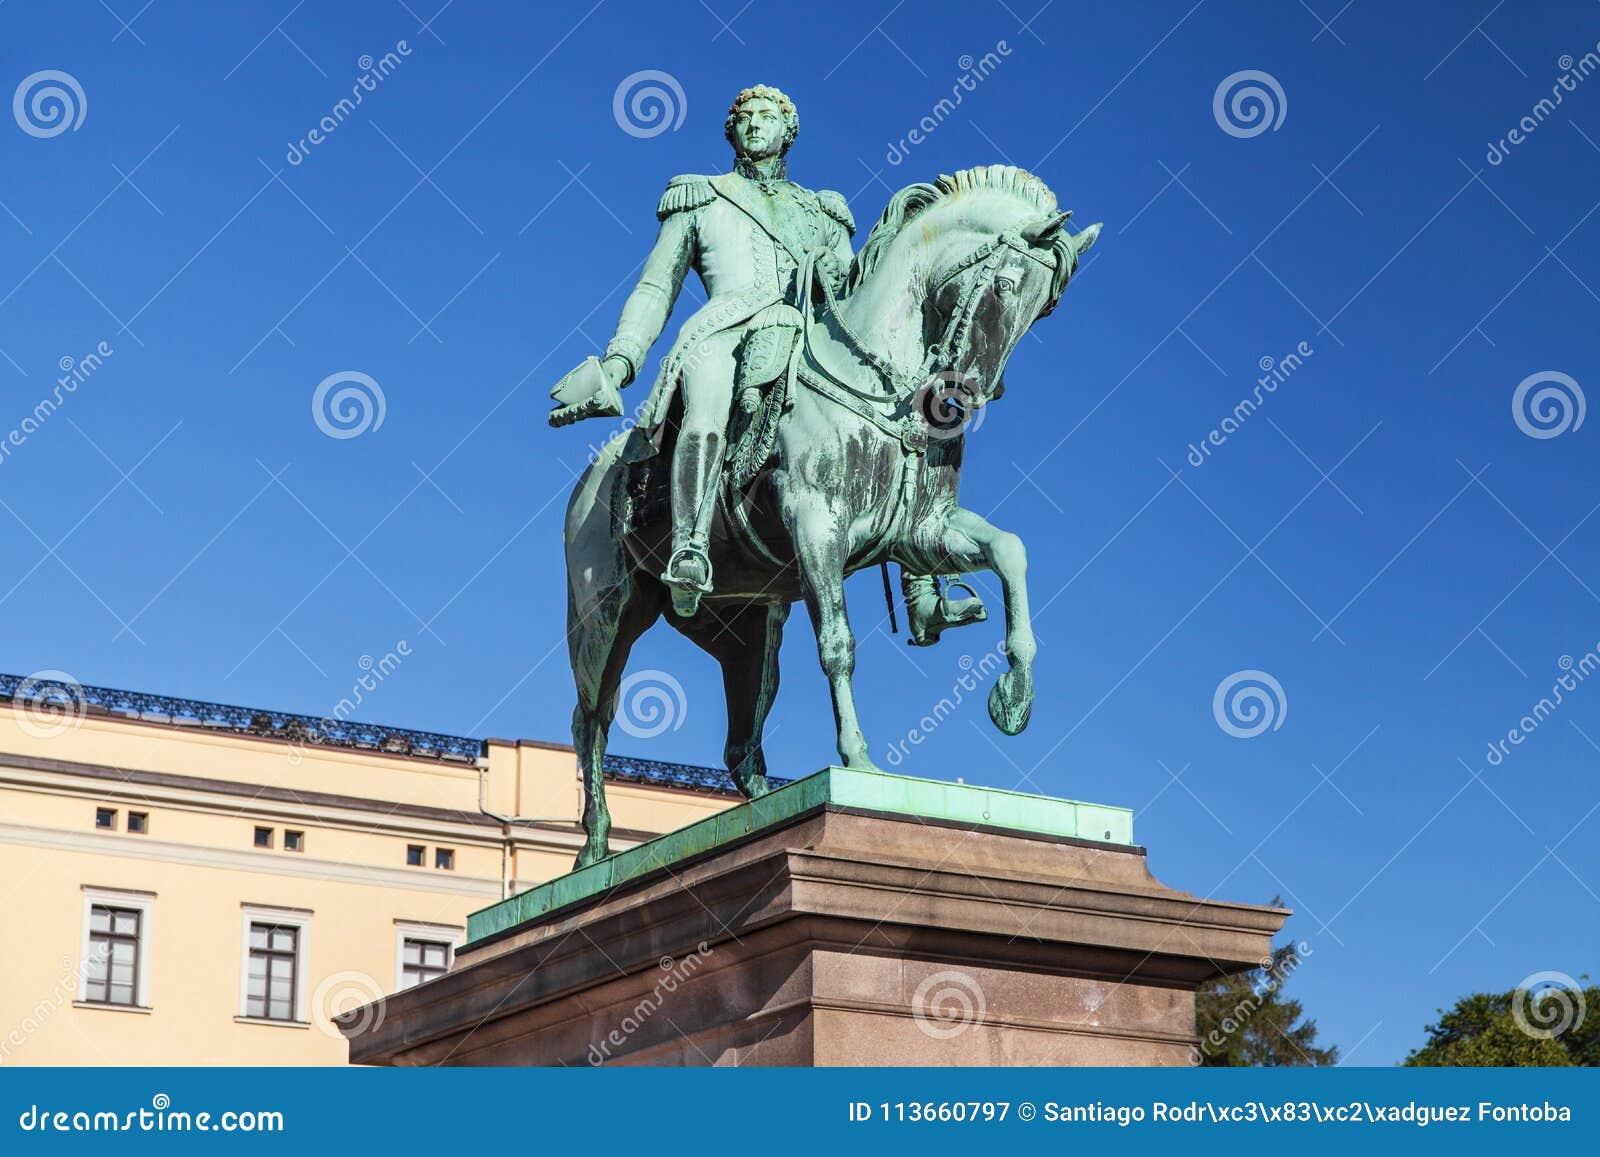 Statue von König Karl Johan in Oslo, Norwegen